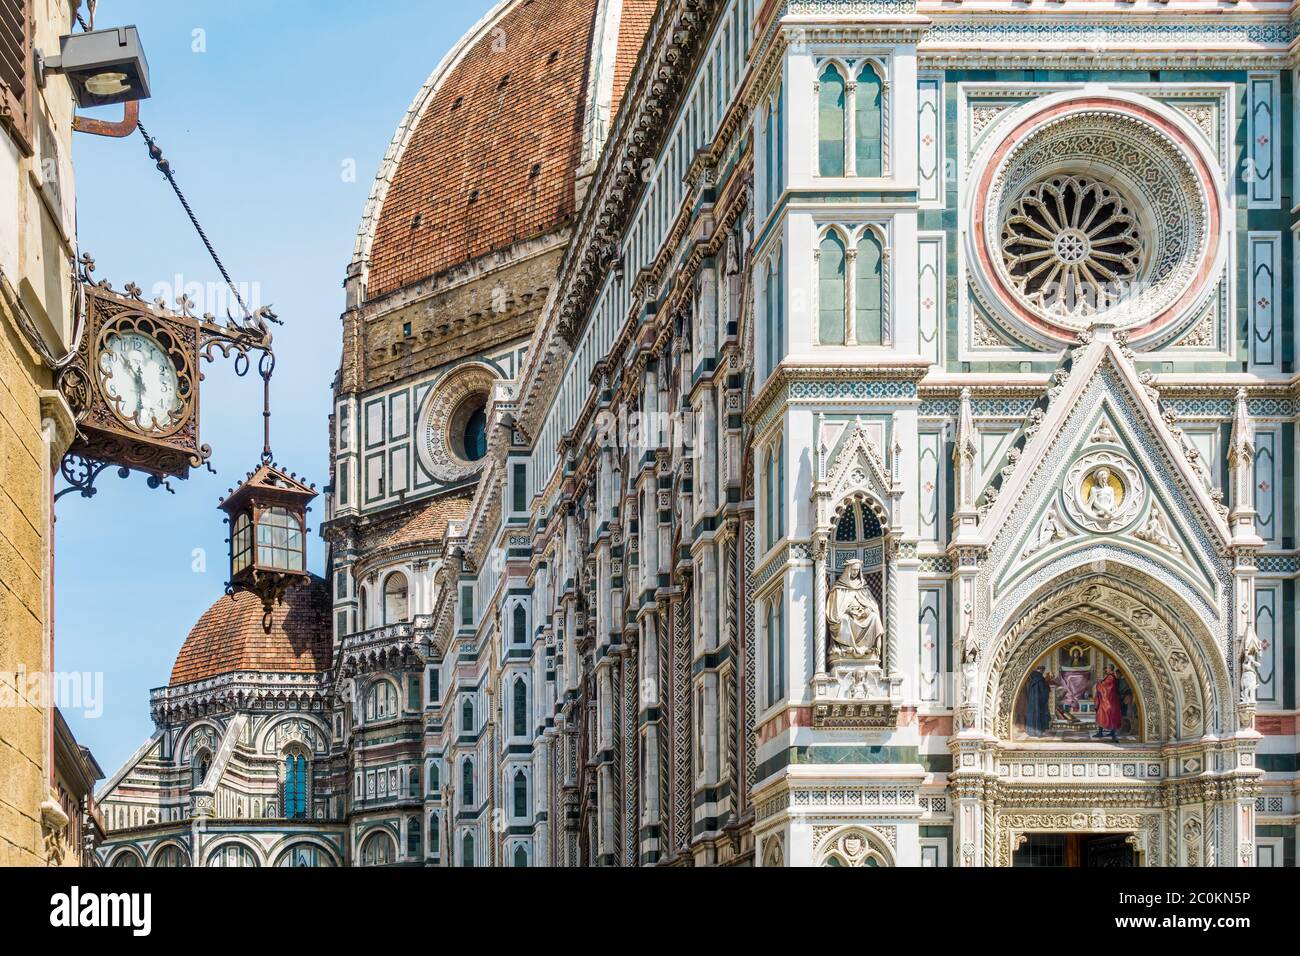 Piazza del Duomo, place de la cathédrale dans le centre historique de Florence Toscane Italie Banque D'Images